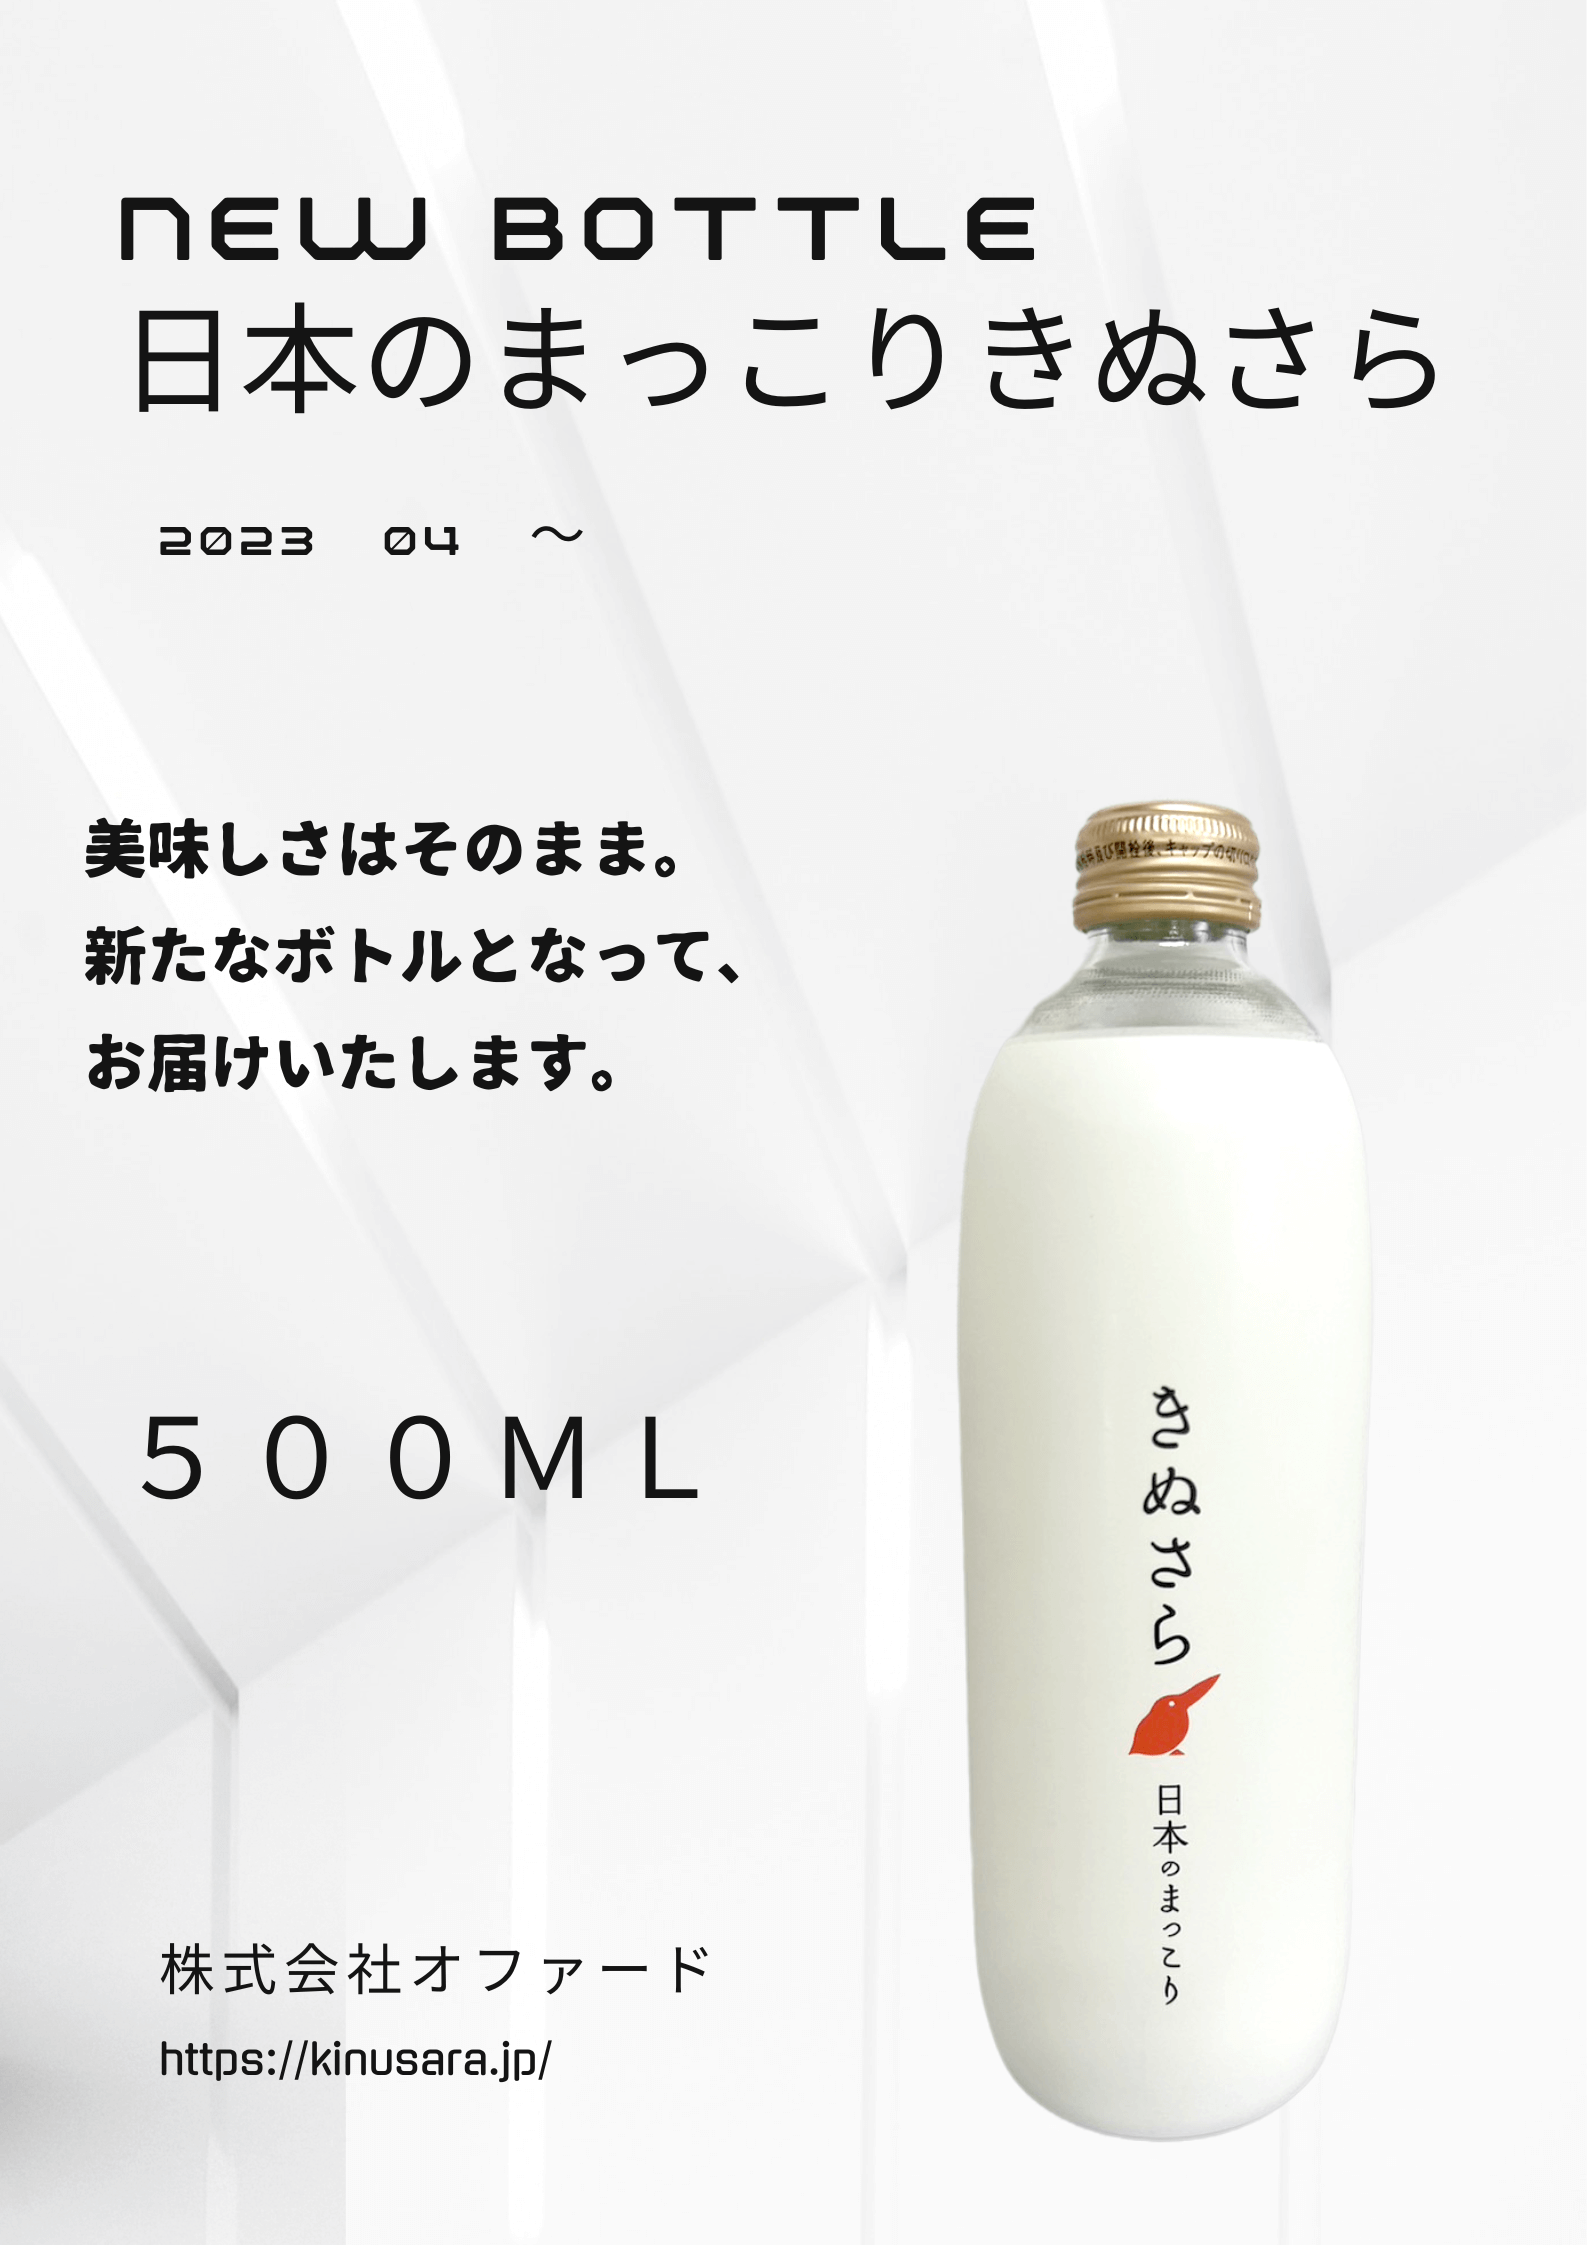 NEW BOTTLE 日本のまっこりきぬさら 2023年4月～ 美味しさそのまま。新たなボトルとなって、お届けします。